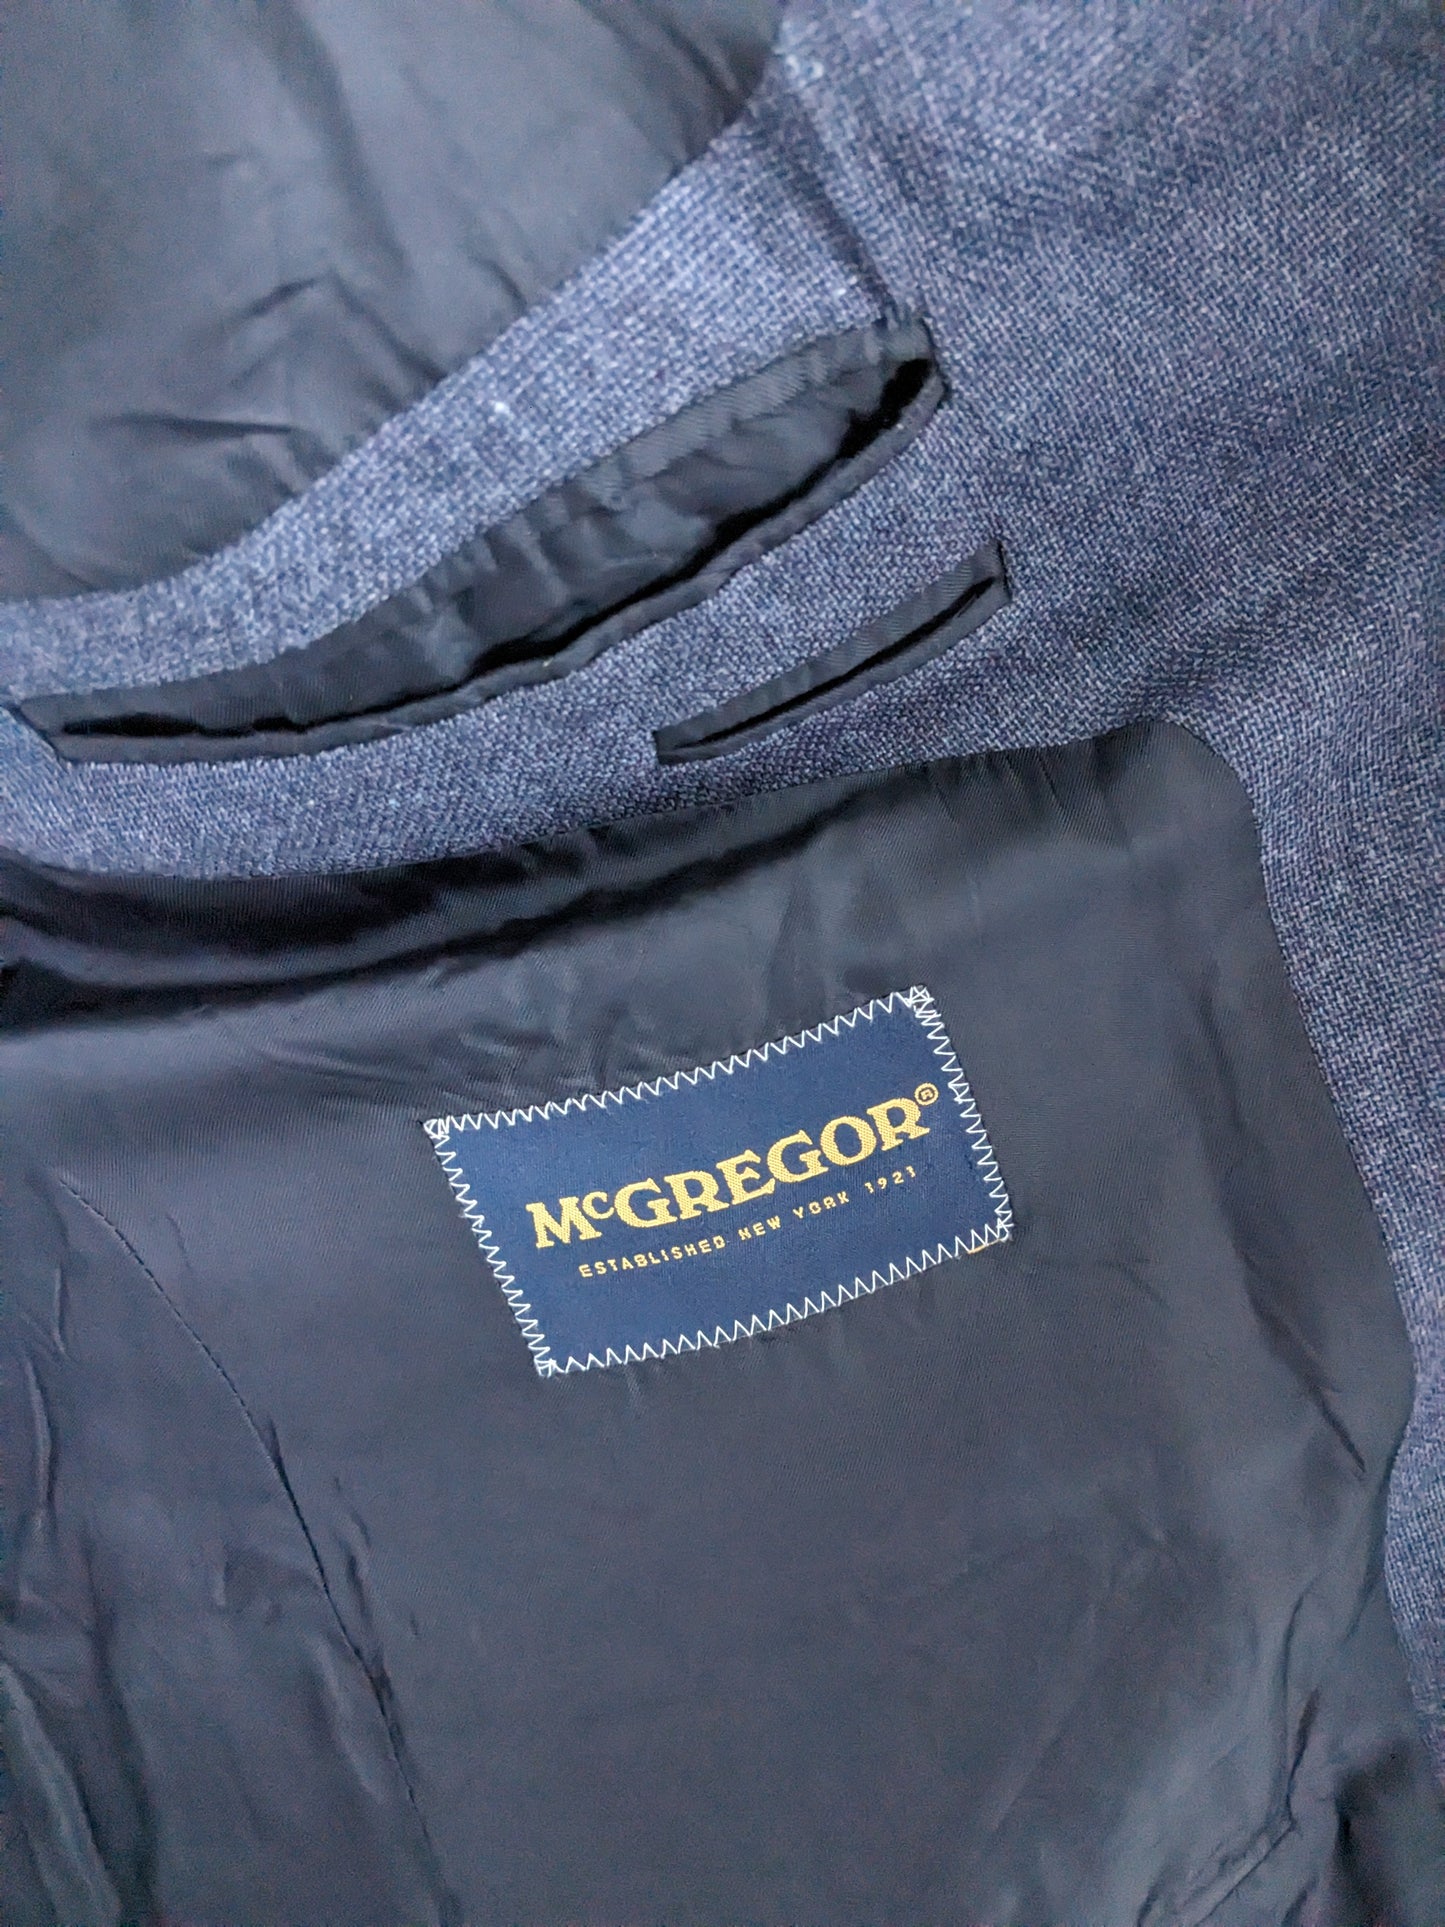 Giacca di seta di lana McGregor. Blu nero miscelato. Dimensione 27 (54 / L).